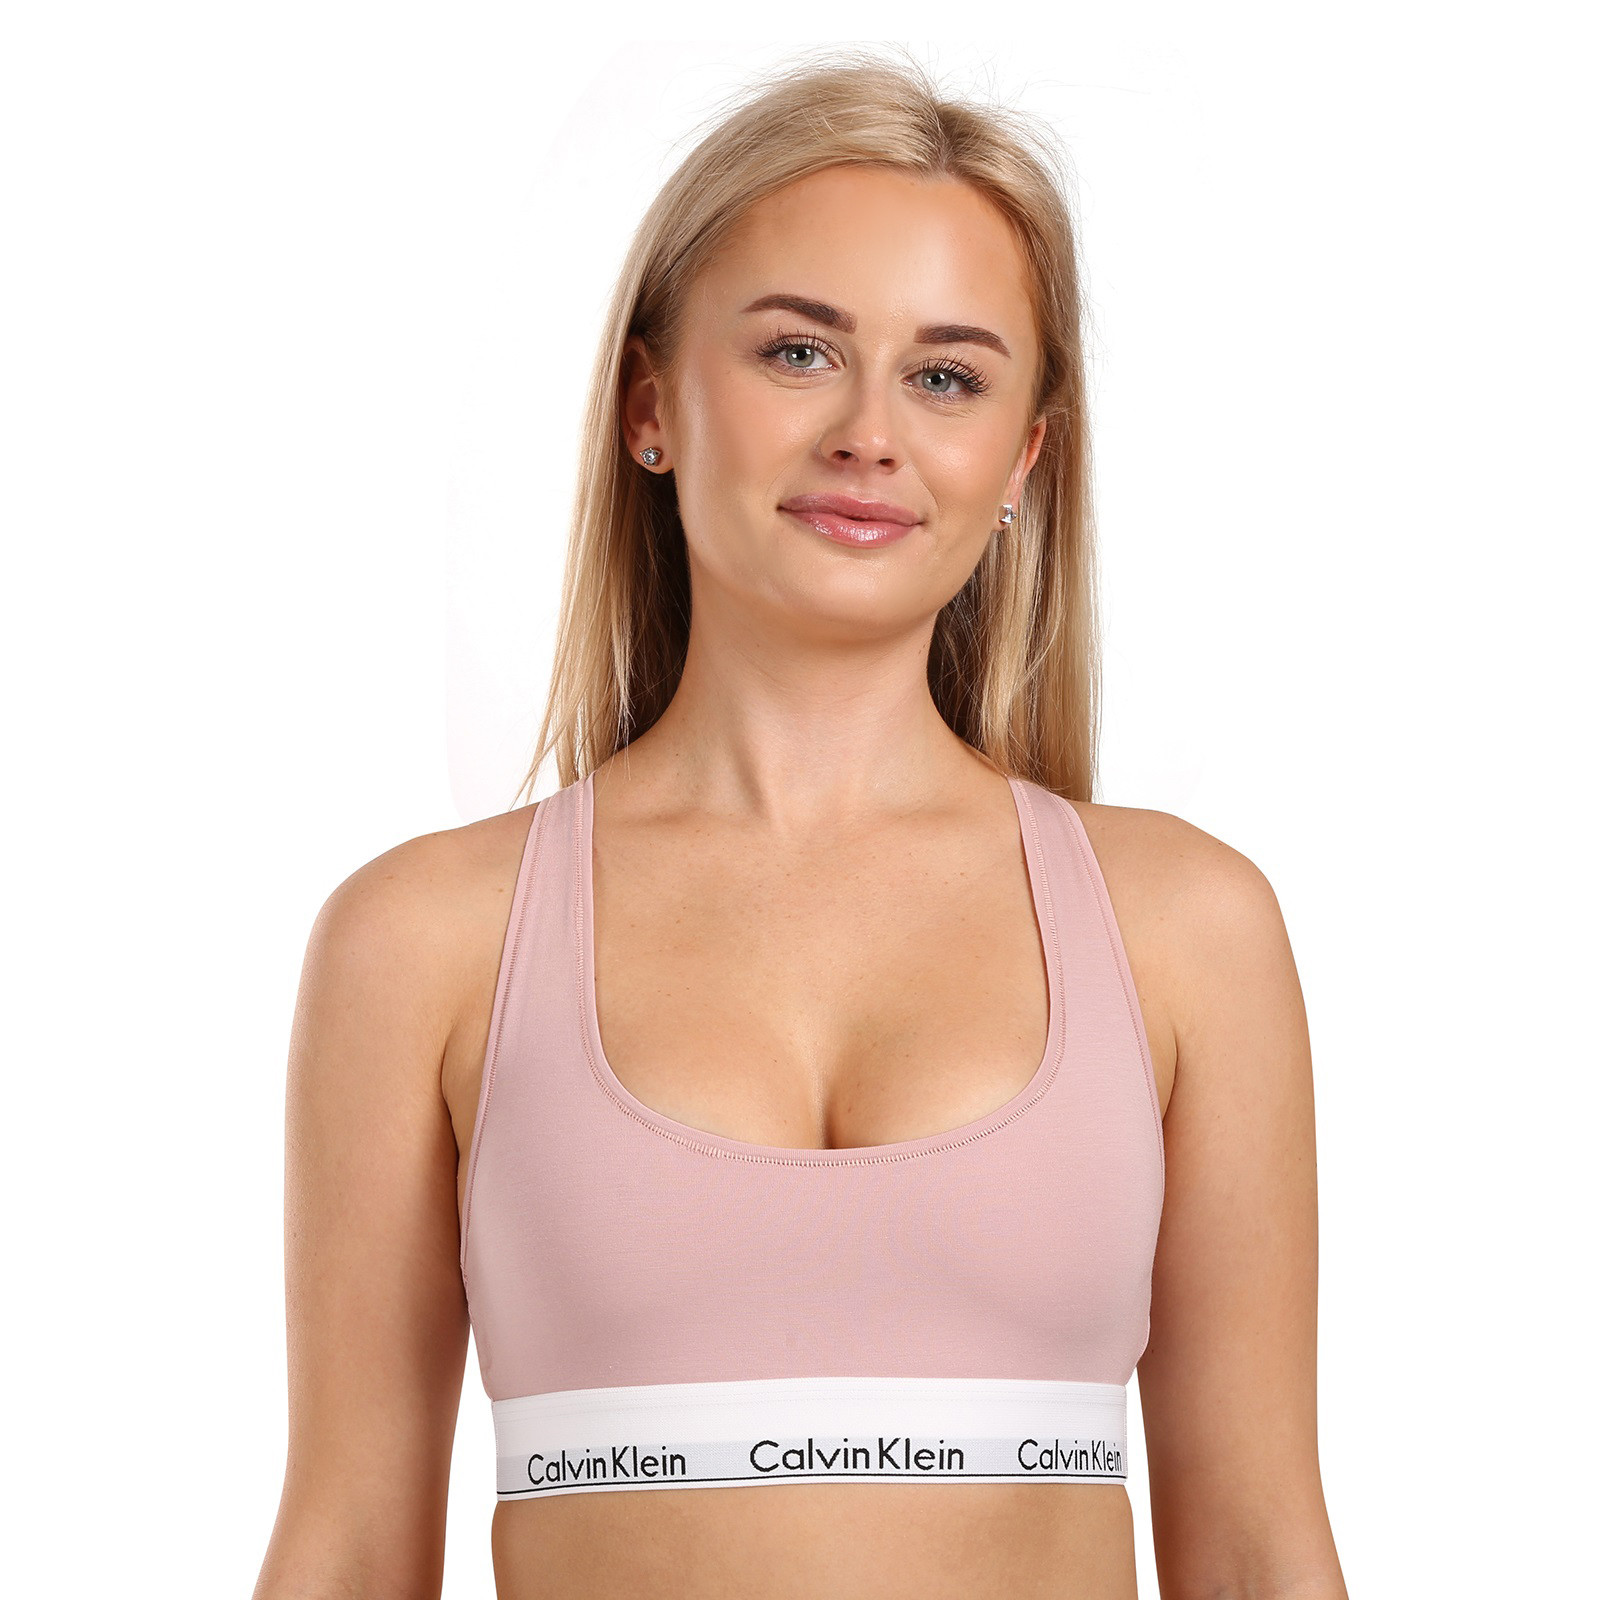 Women's bra Calvin Klein pink